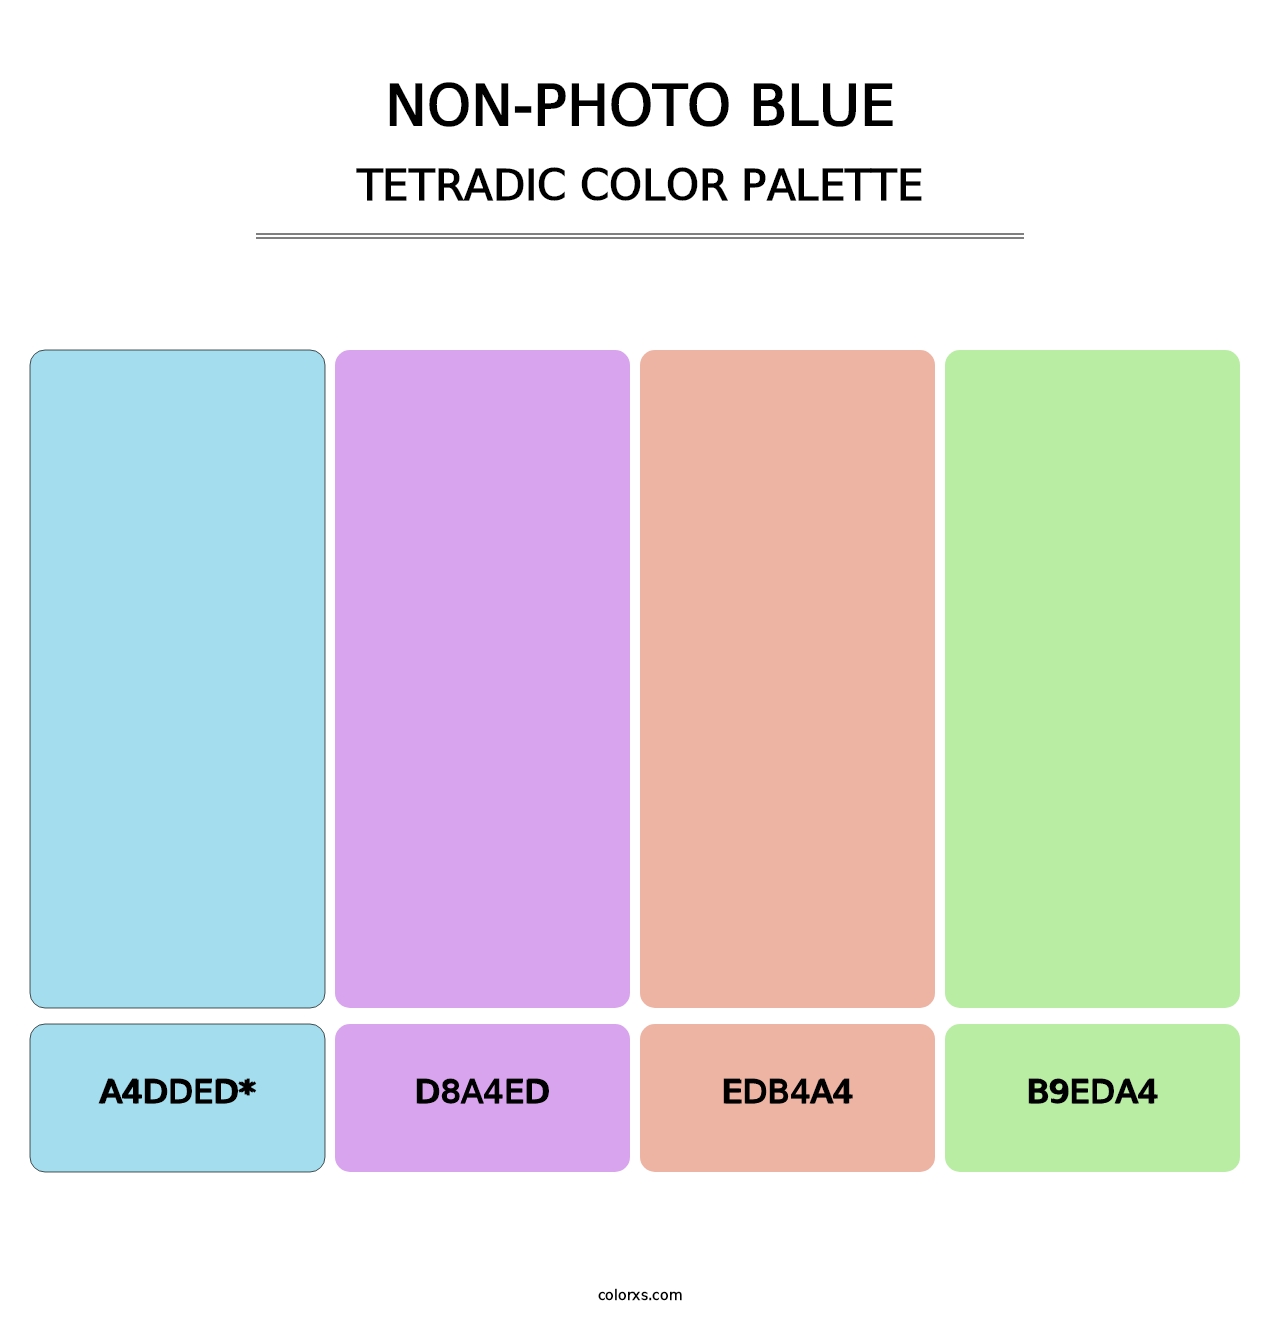 Non-photo Blue - Tetradic Color Palette